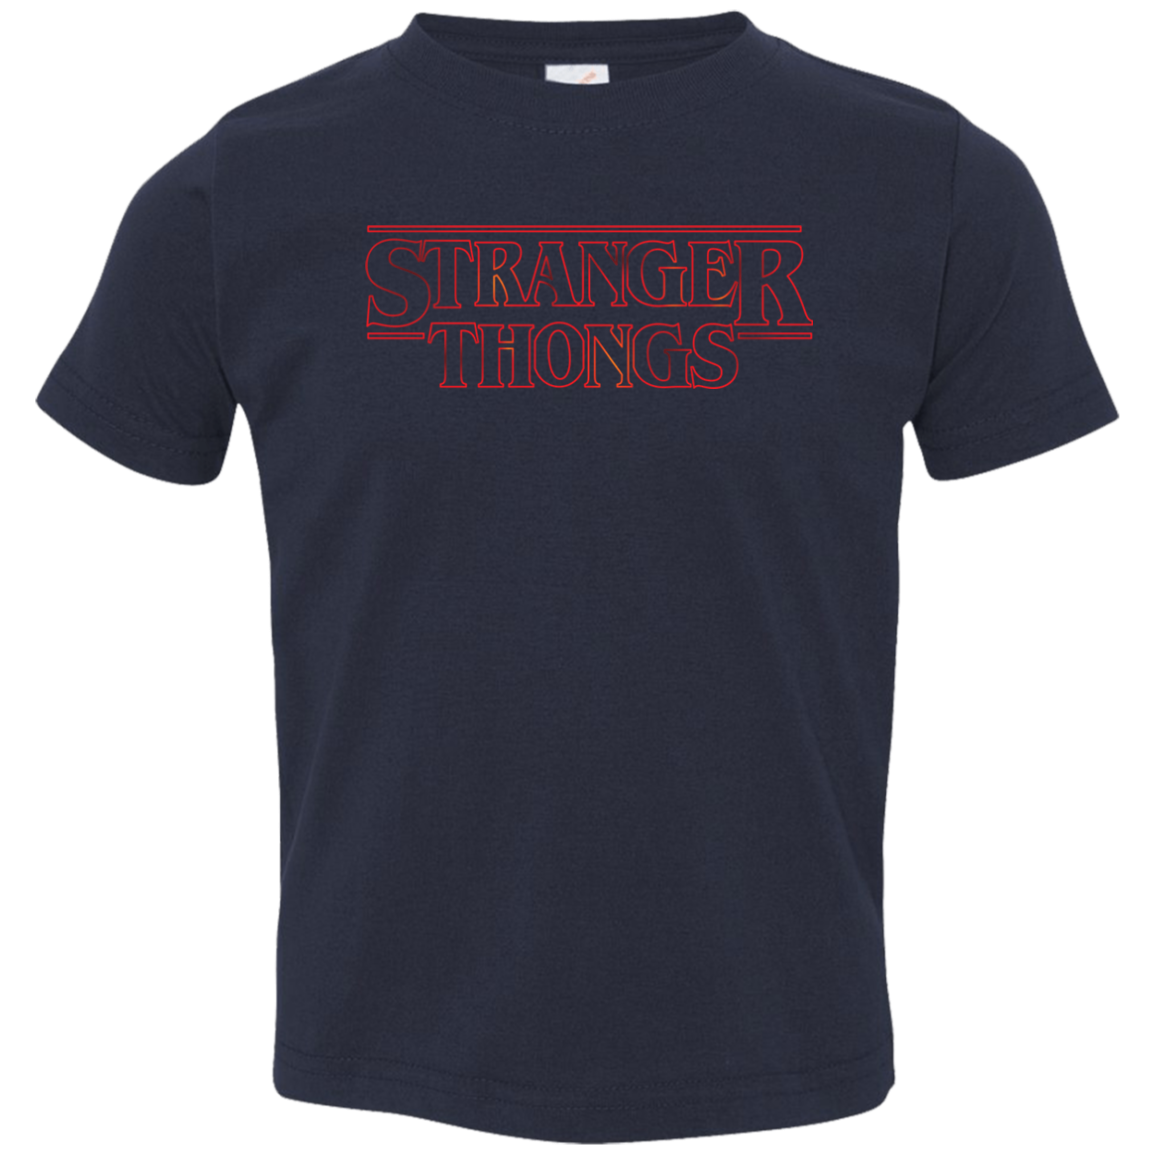 Stranger Thongs Toddler Premium T-Shirt